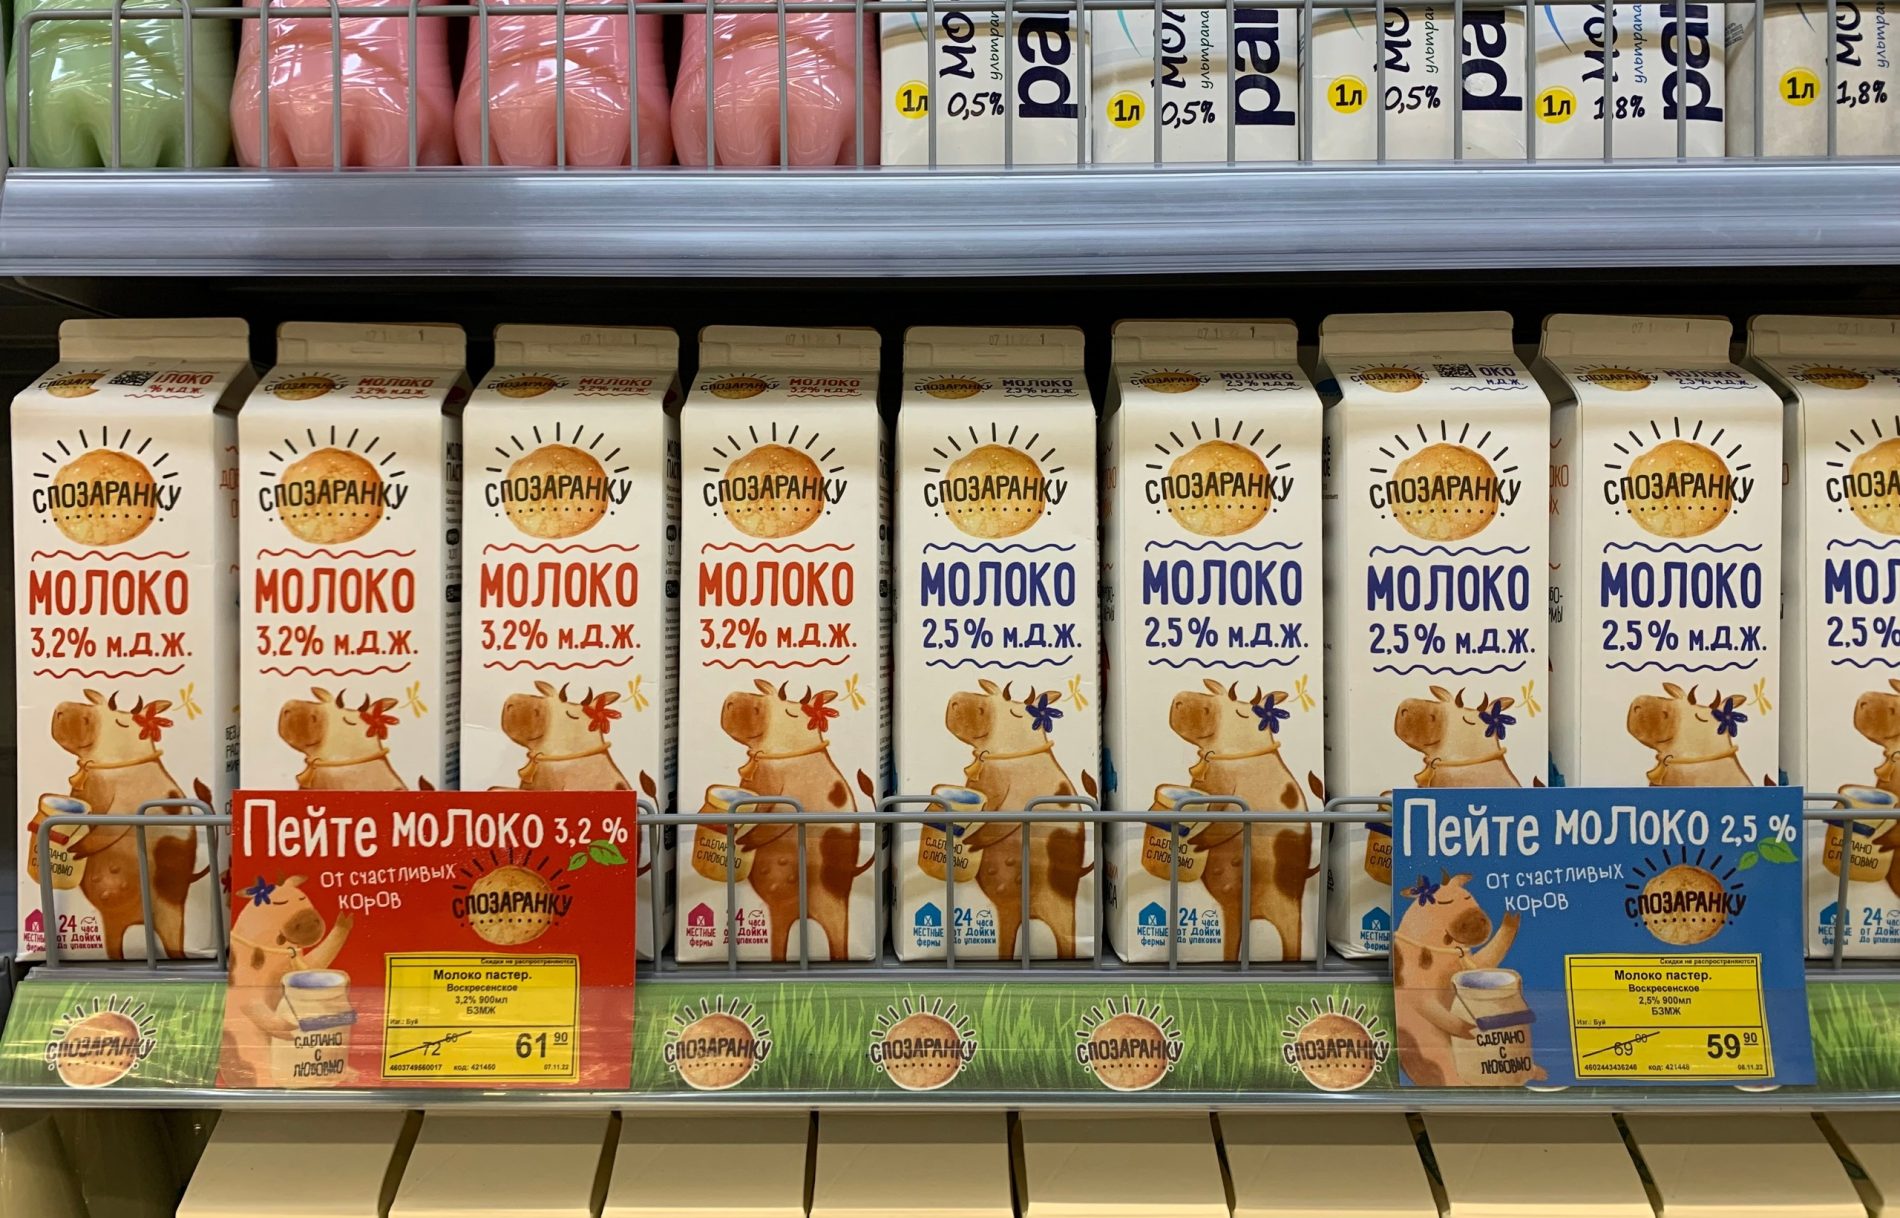 В Костромской области появился новый бренд молочных продуктов "Спозаранку"